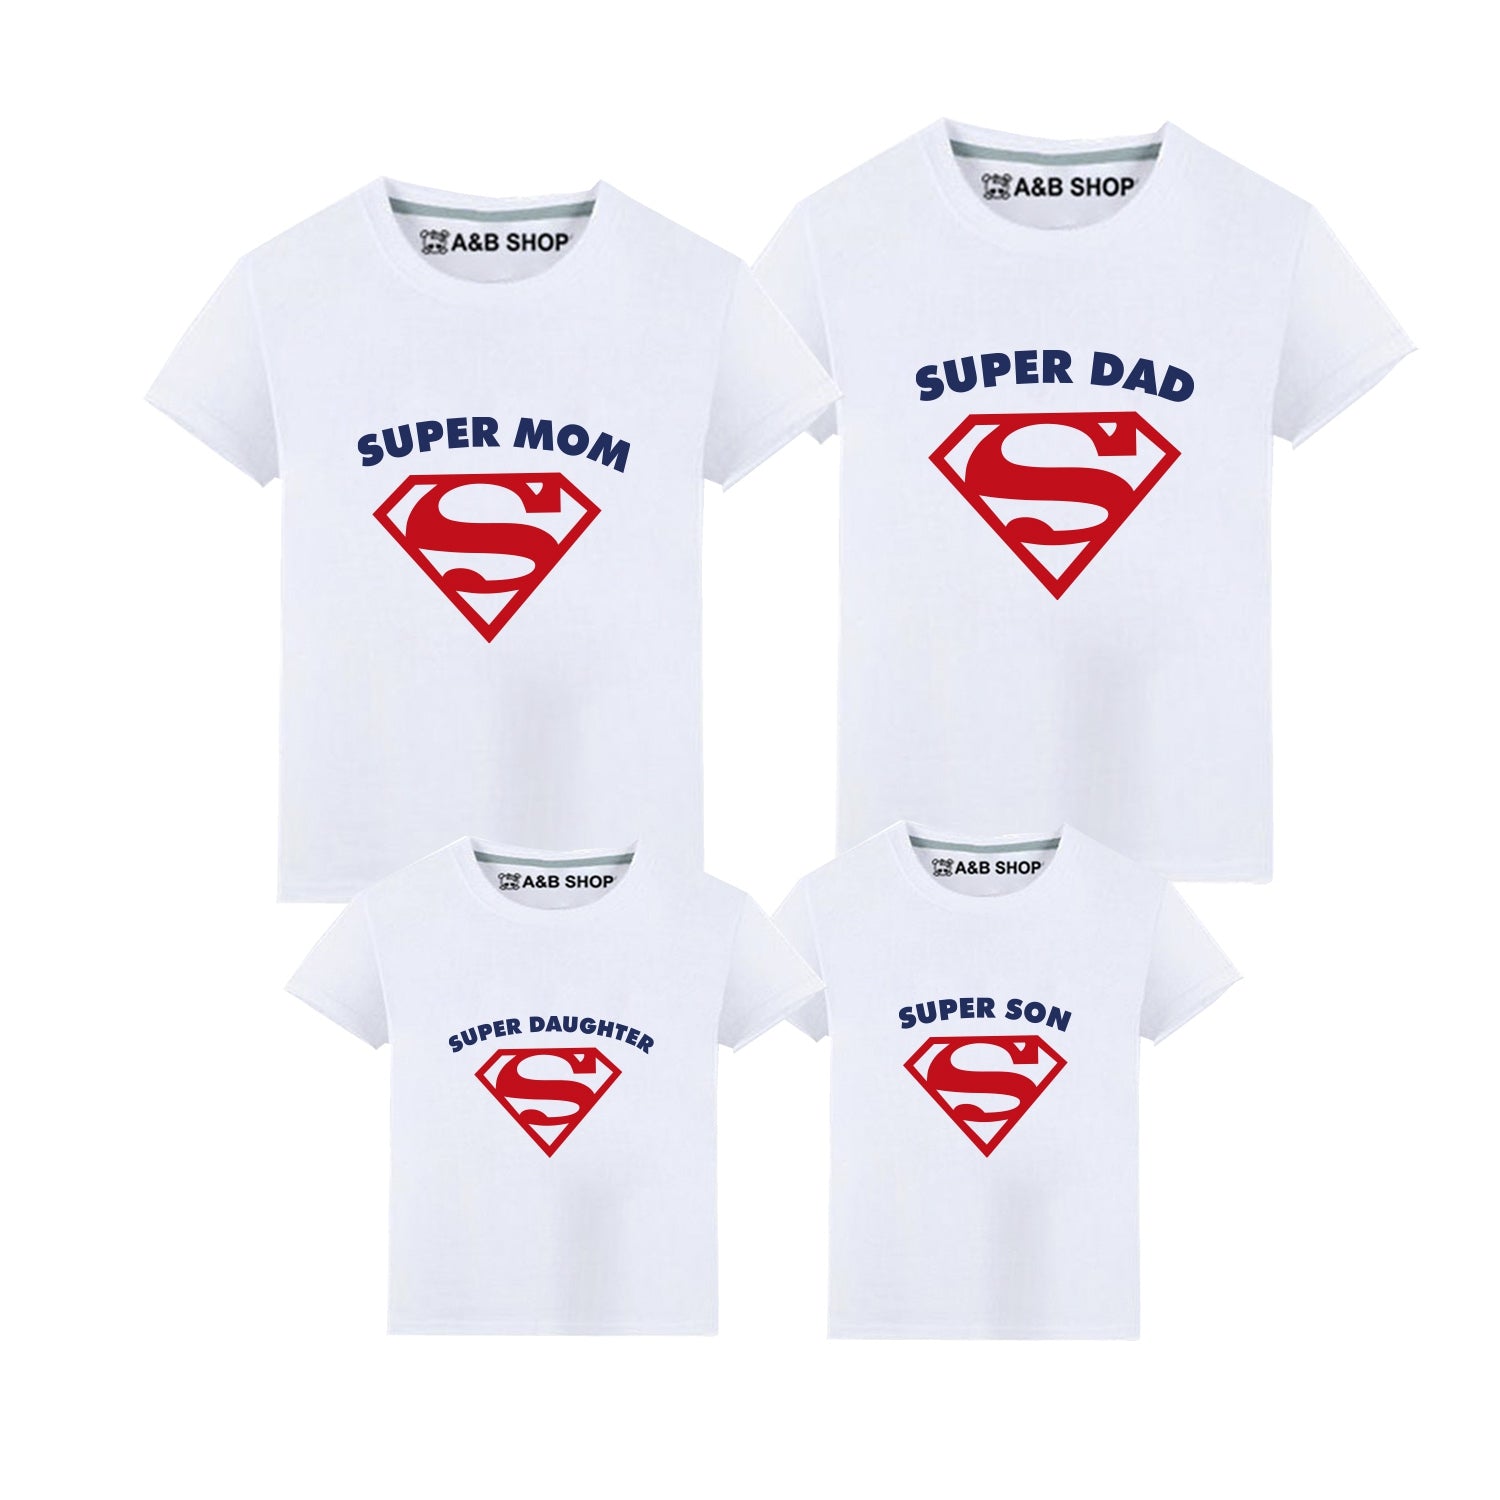 Superidade T -Shirt, mãe e crianças